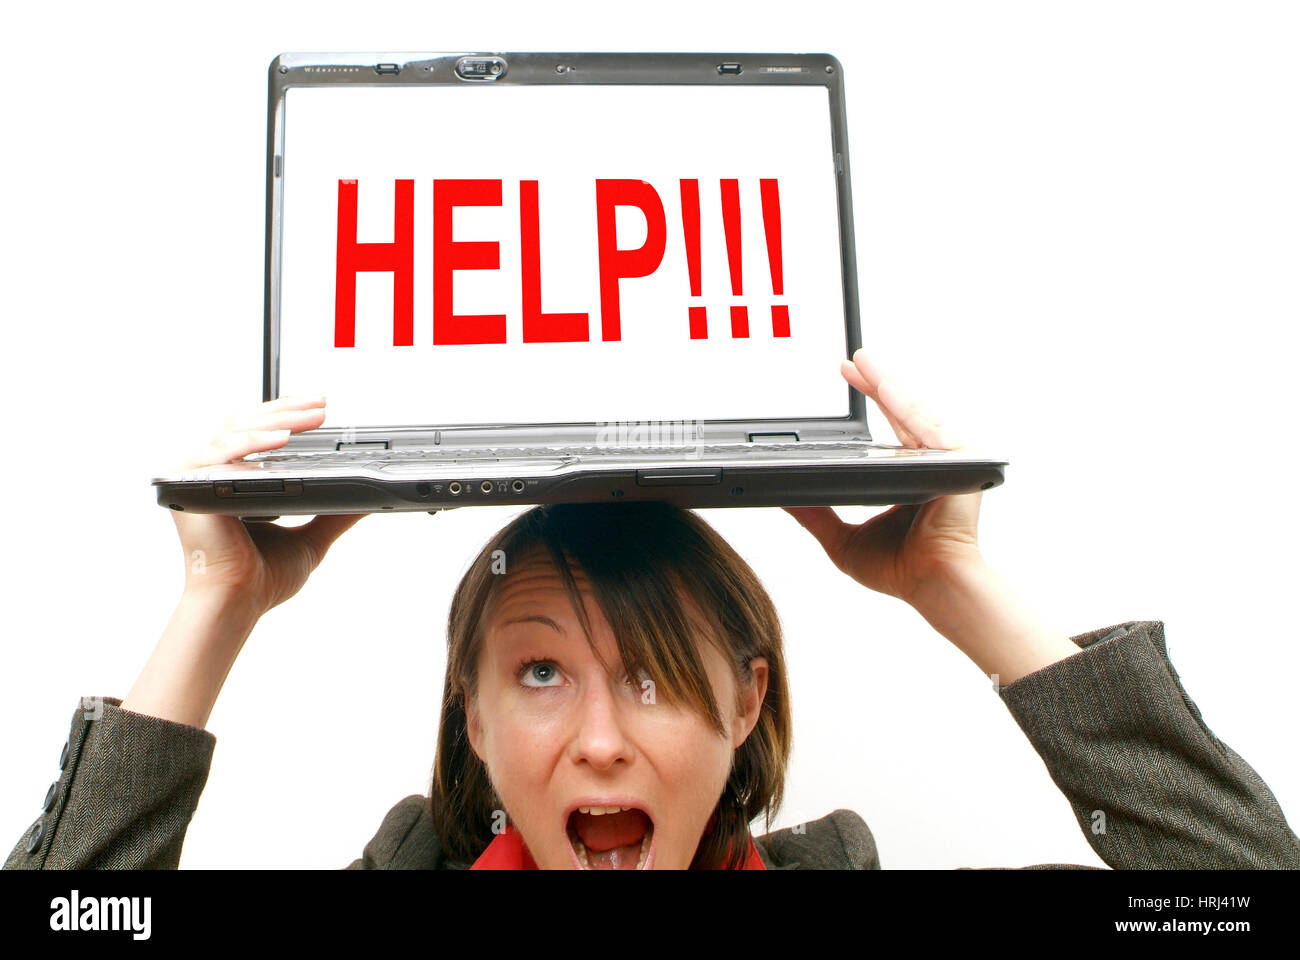 Gesch?ftsfrau mit Laptop am Kopf, Symbolbild Hilfe - donna d'affari con computer portatile sulla testa, simbolico per aiutare Foto Stock